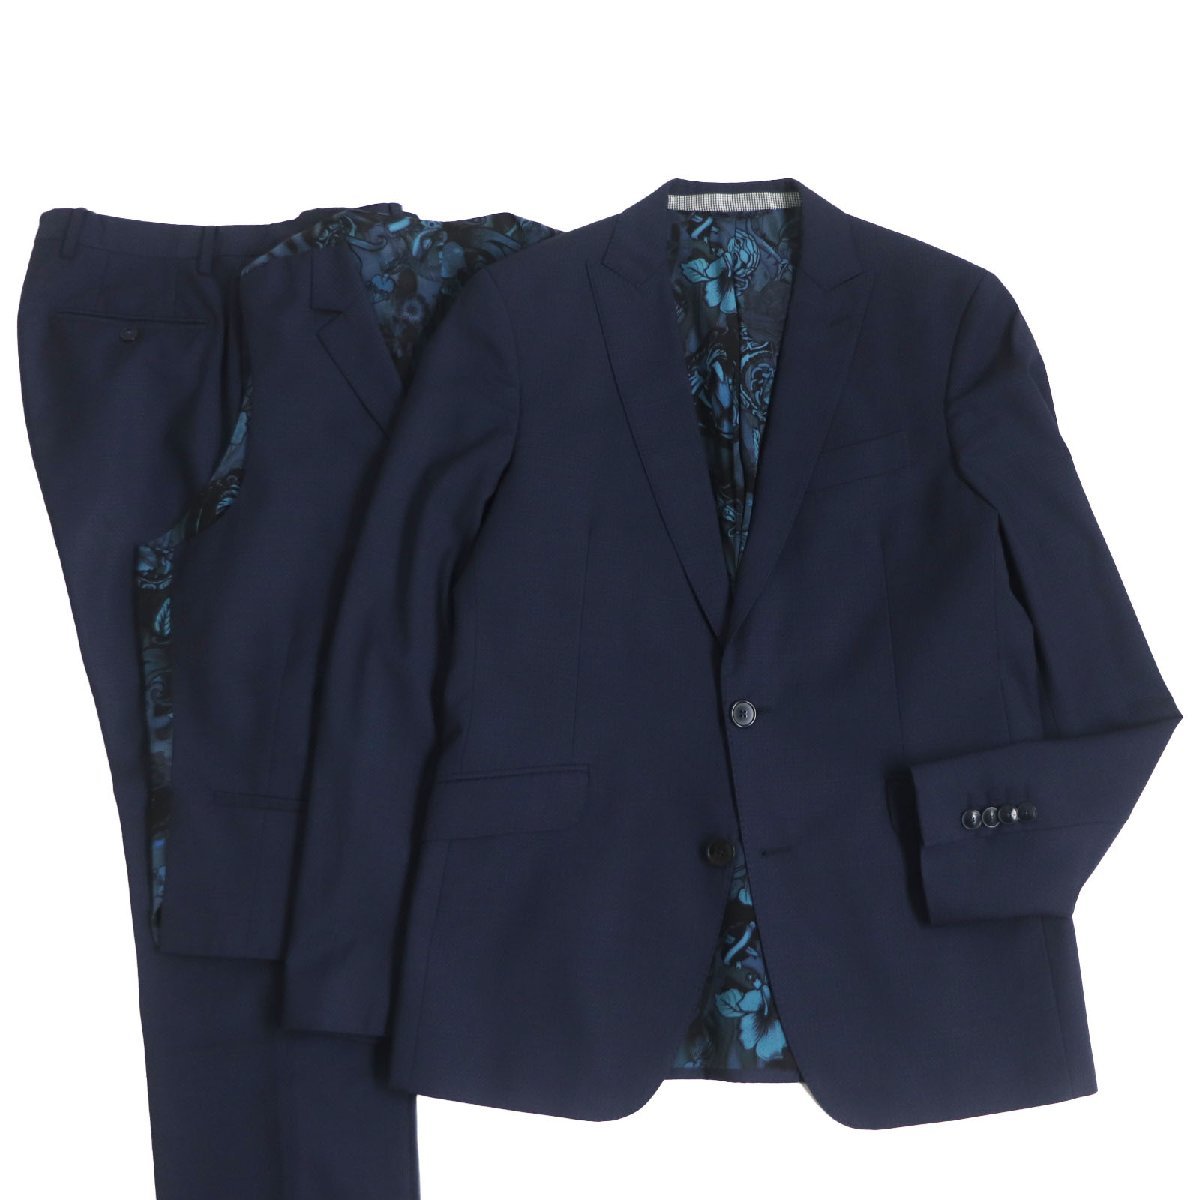  превосходный товар ETRO Etro 2017 год производства шерсть подкладка шелк 100% подкладка peiz Lee рисунок одиночный костюм-тройка выставить темно-синий 46 сделано в Италии стандартный товар мужской 